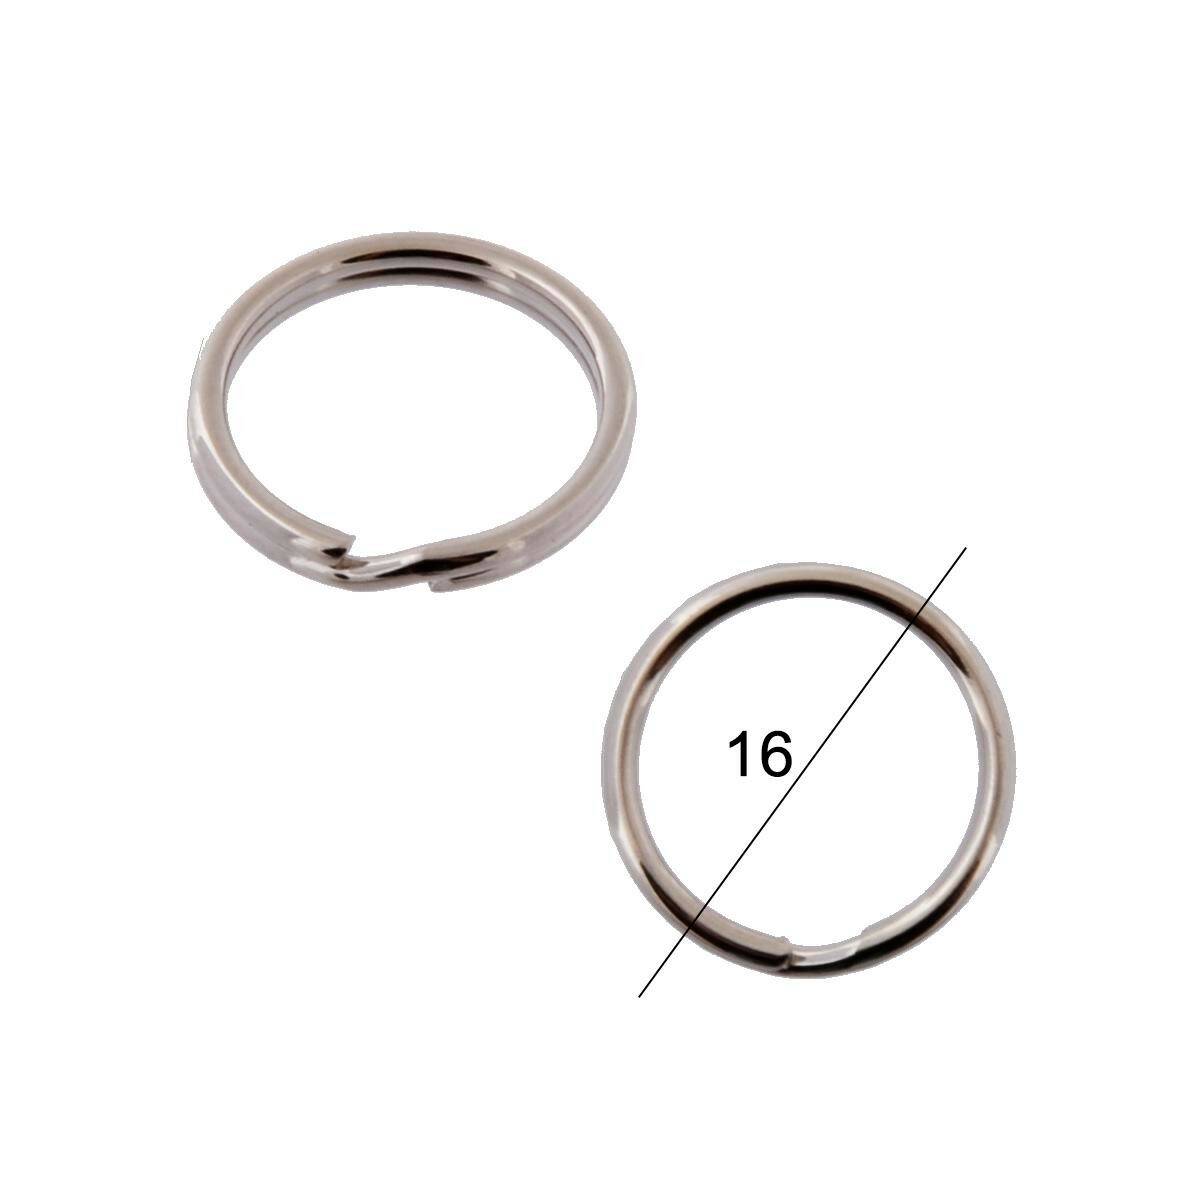 Key rings diameter 16mm